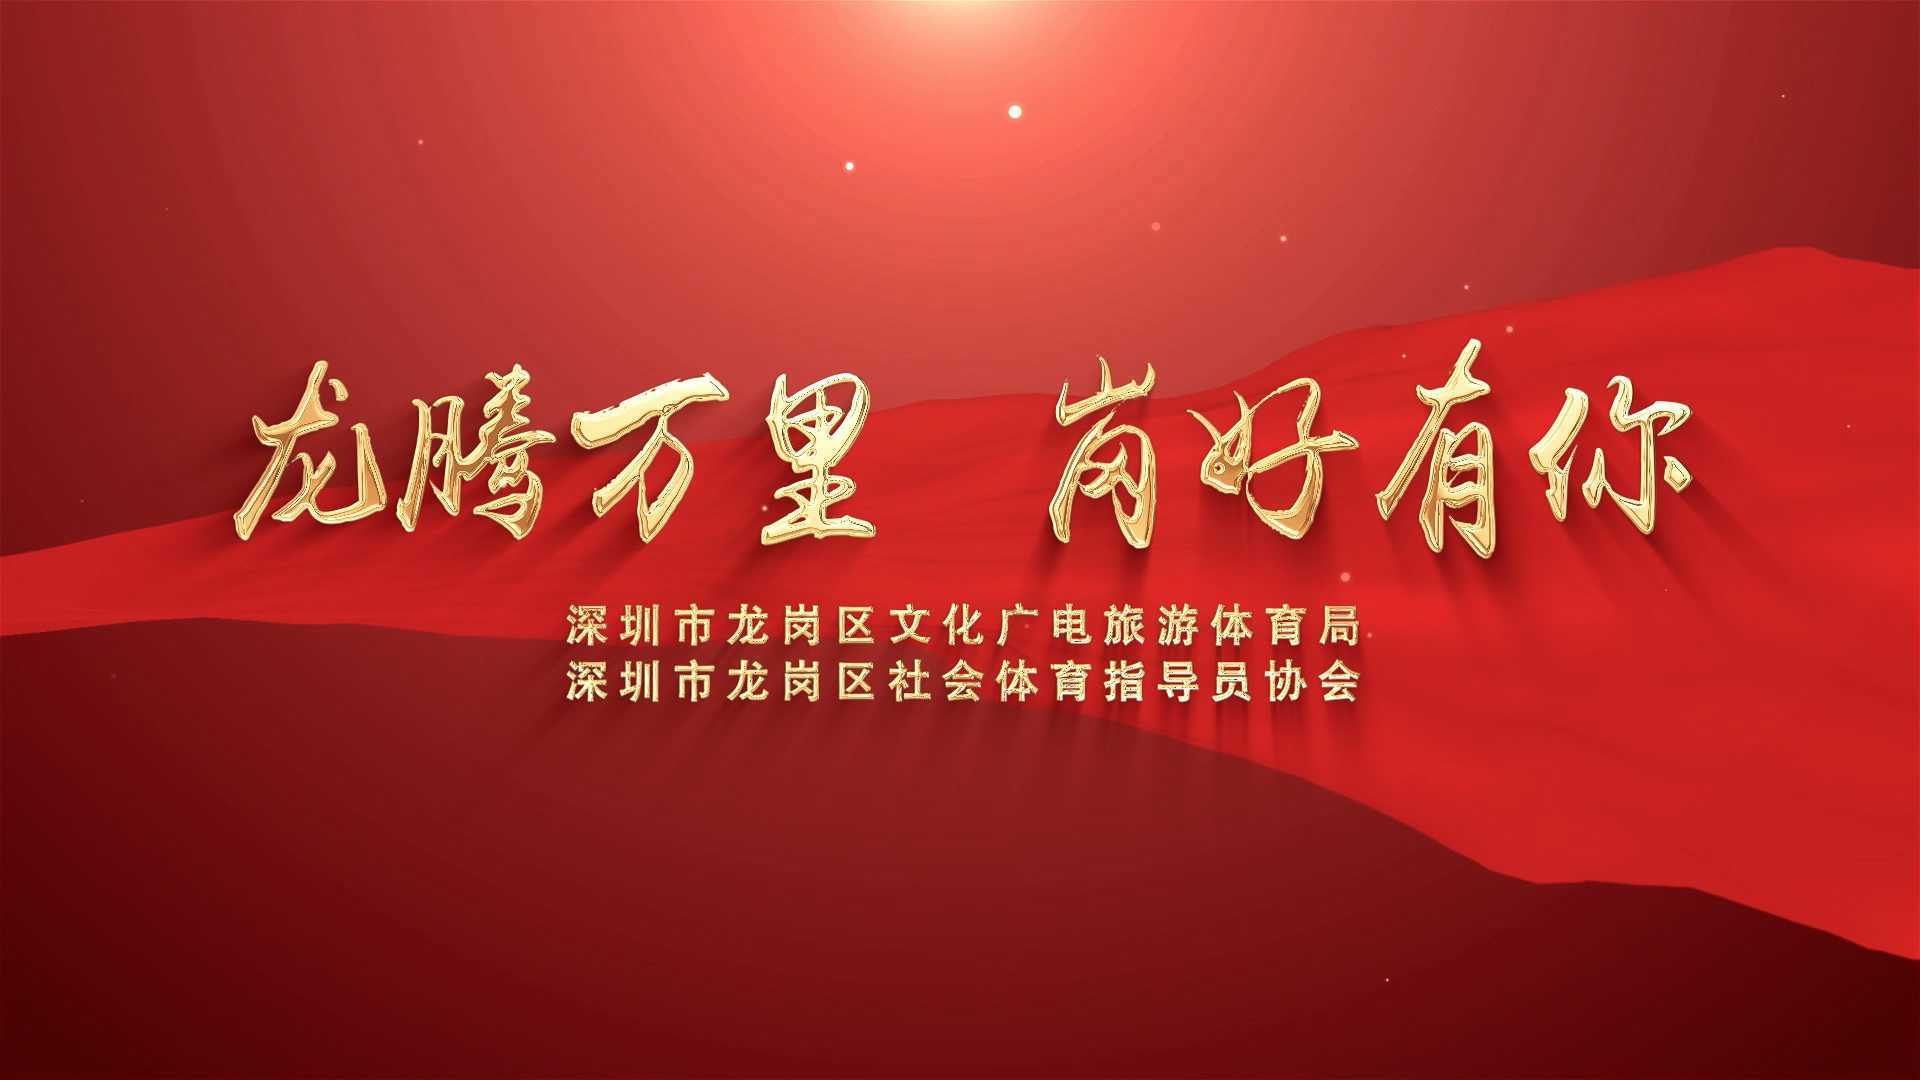 深圳市龙岗区社会体育指导员协会宣传片